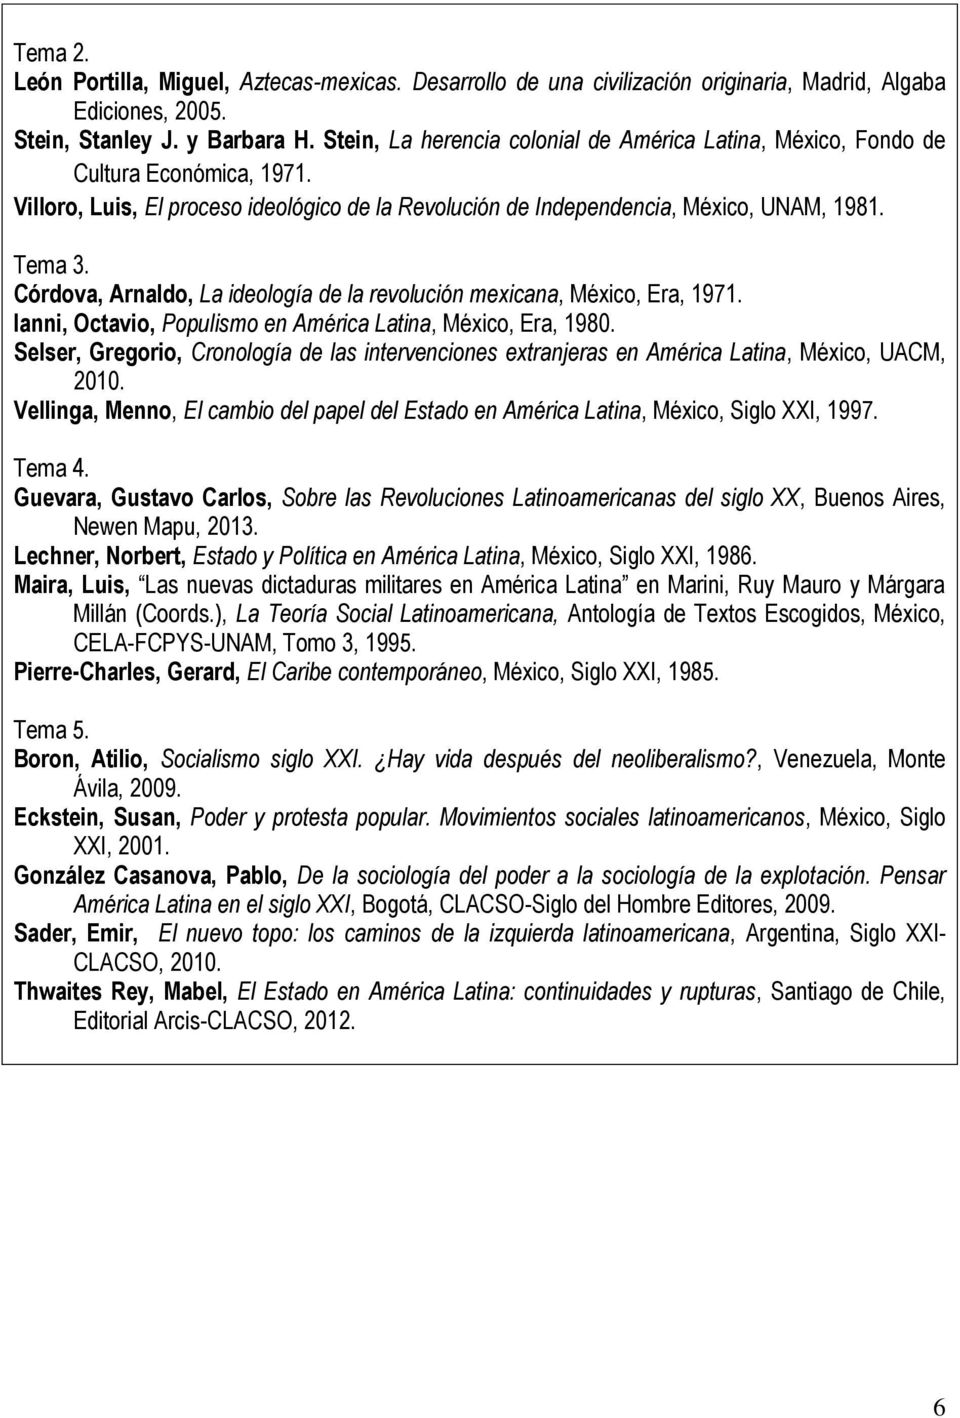 Córdova, Arnaldo, La ideología de la revolución mexicana, México, Era, 1971. Ianni, Octavio, Populismo en América Latina, México, Era, 1980.